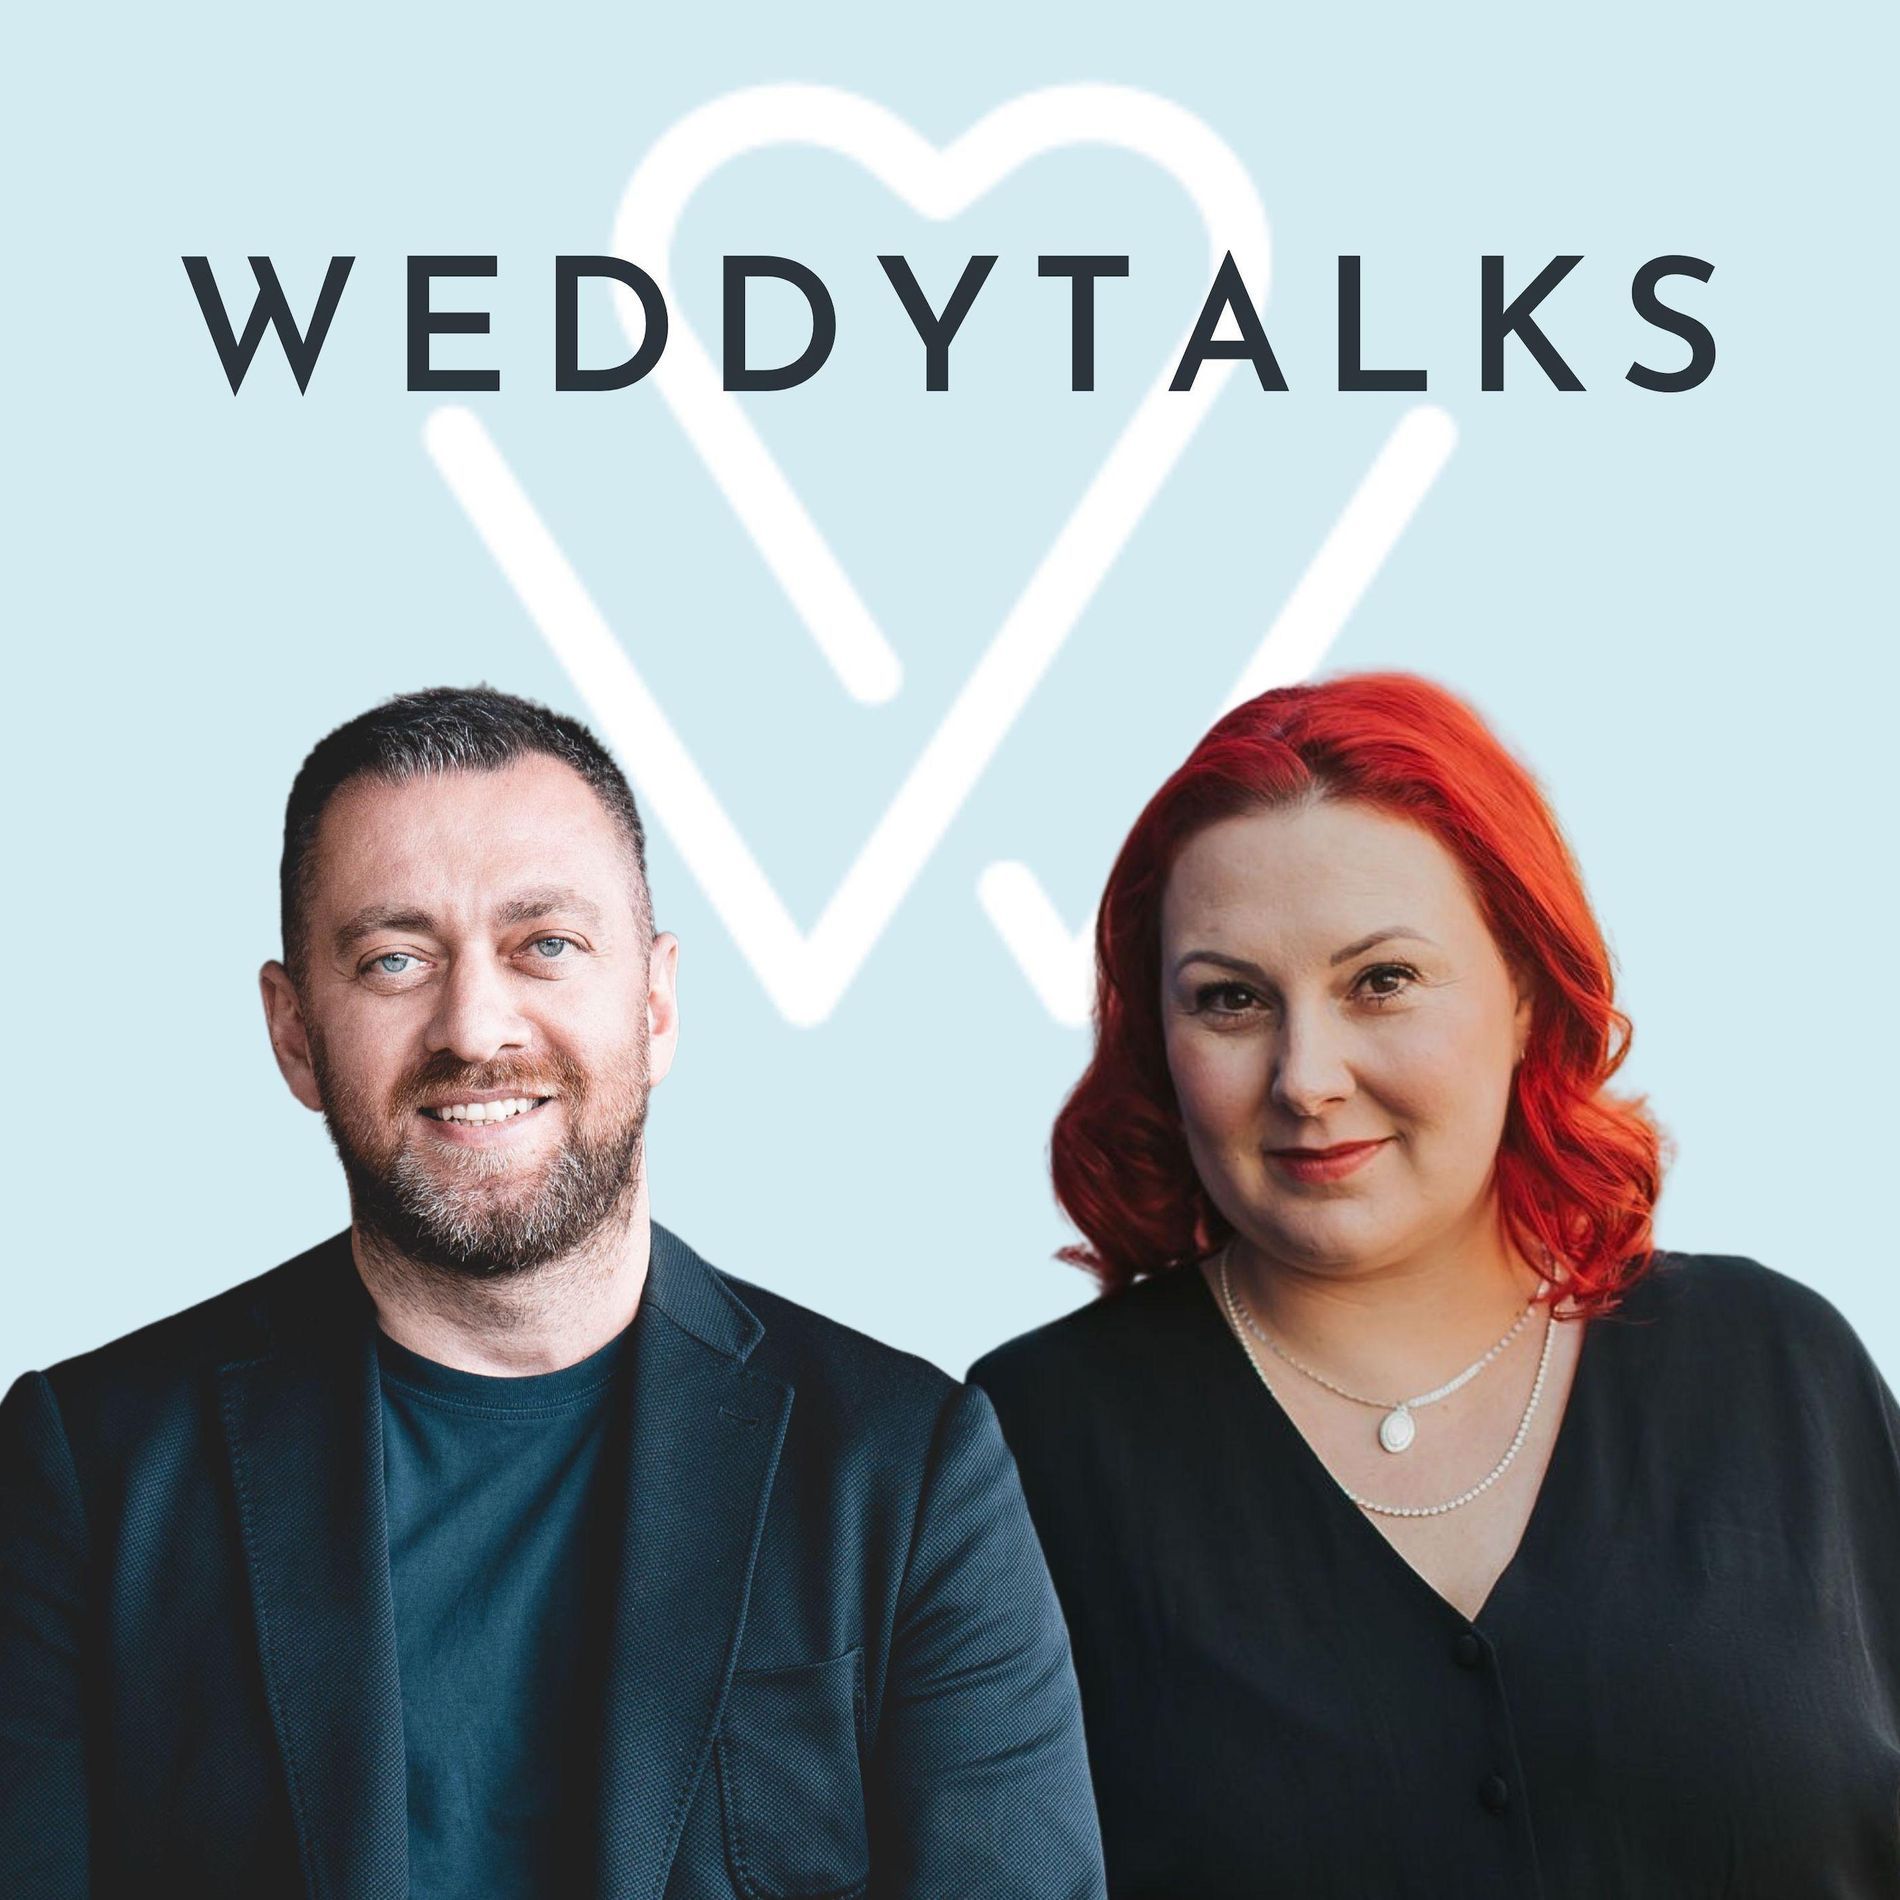 Das Weddingytalks-Logo mit einem Mann und einer Frau davor.